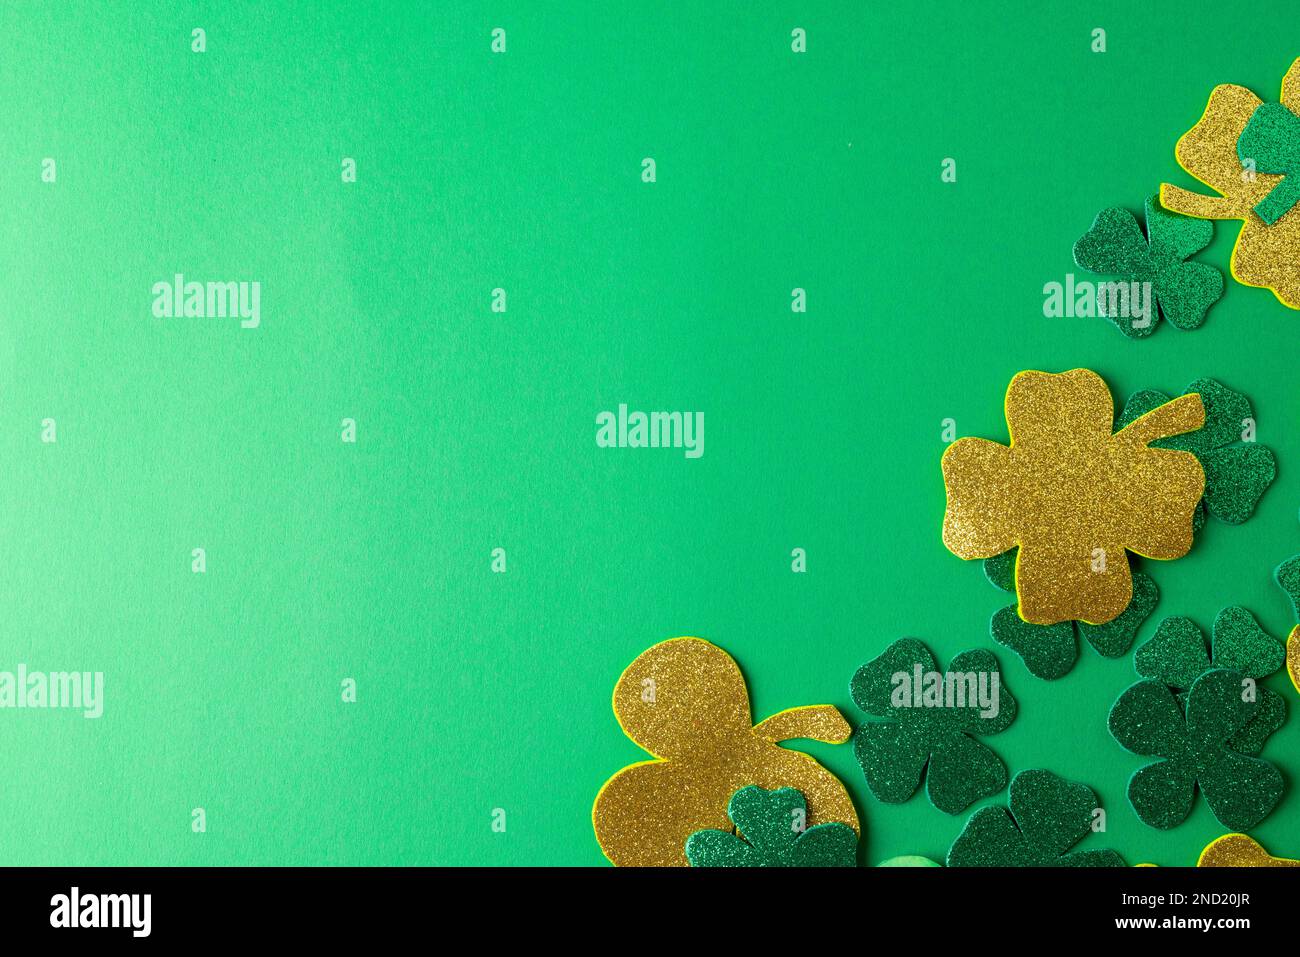 Bild von grünem Klee und Kopierbereich auf grünem Hintergrund Stockfoto